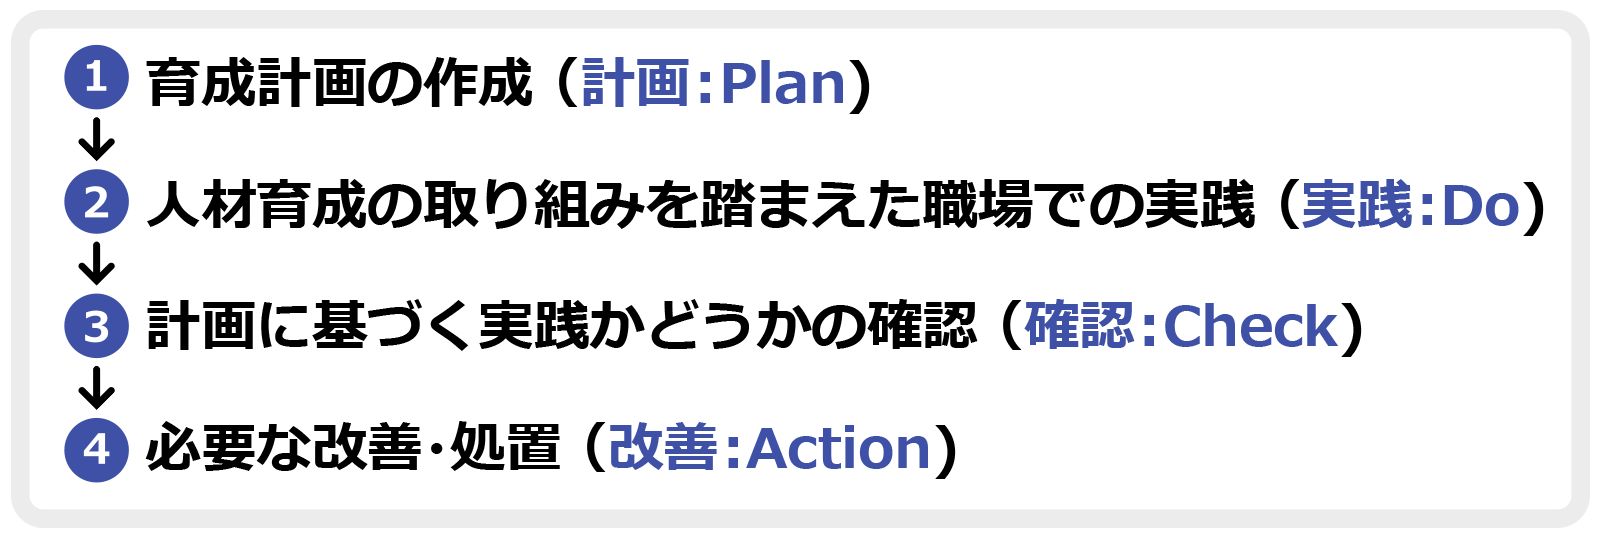 1.育成計画の作成（計画：Plan） → 2.人材育成の取り組みを踏まえた職場での実践（実践：Do） → 3.計画に基づく実践かどうかの確認（確認：Check） → 4.必要な改善・処置（改善：Action）